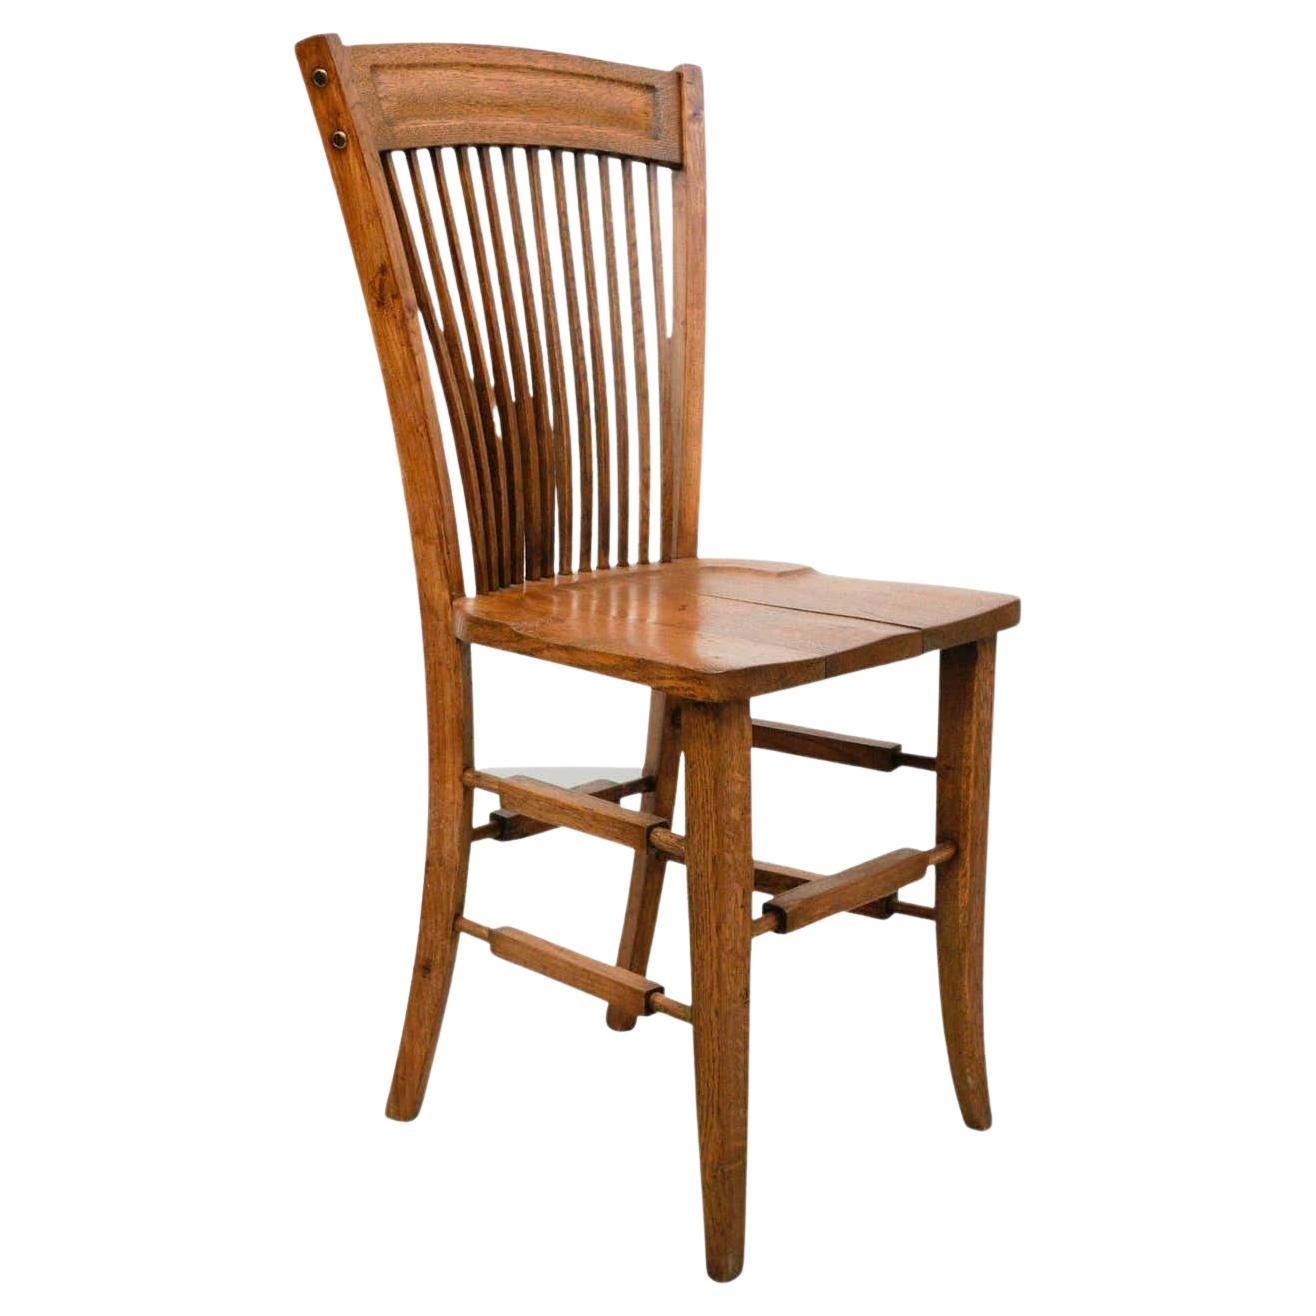 Début du 20e siècle, Chaise traditionnelle en bois